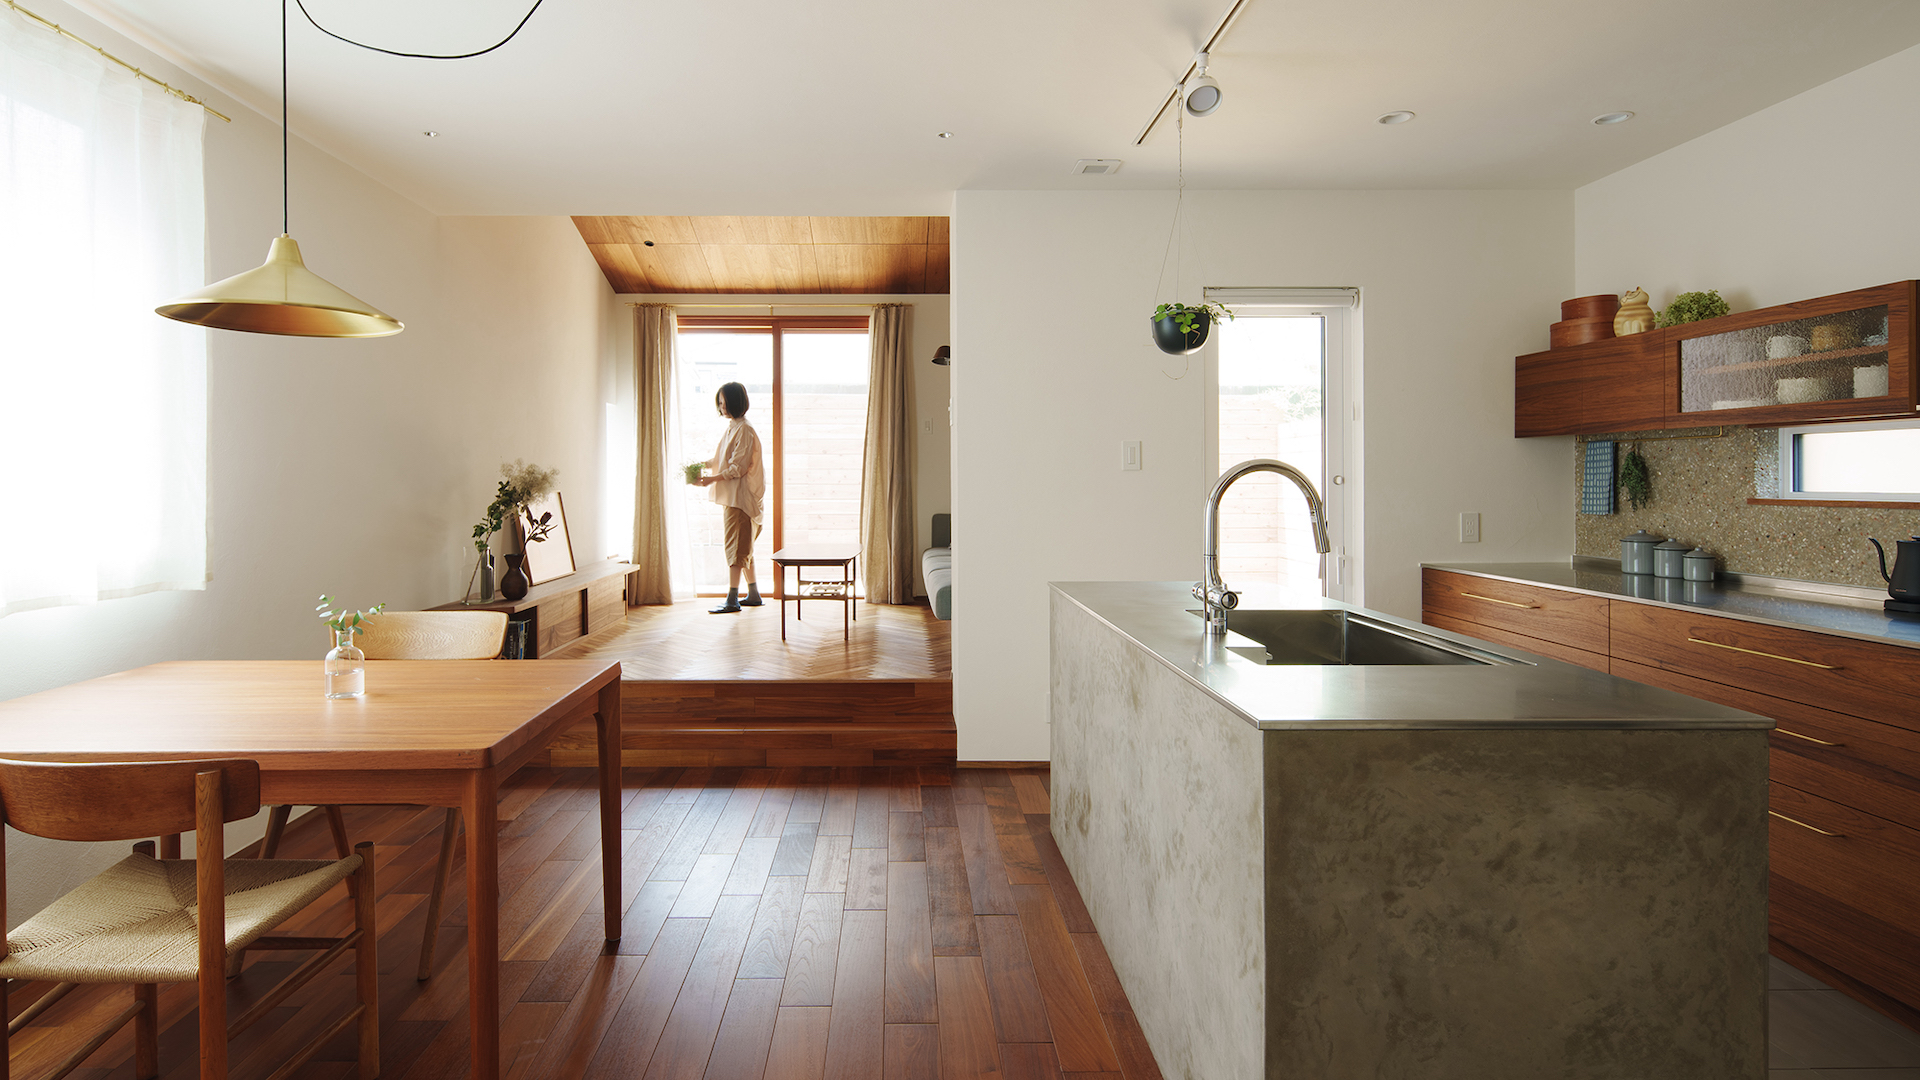 チークの床、漆喰の壁など自然素材を取り入れた、上質なデザインの新築注文住宅